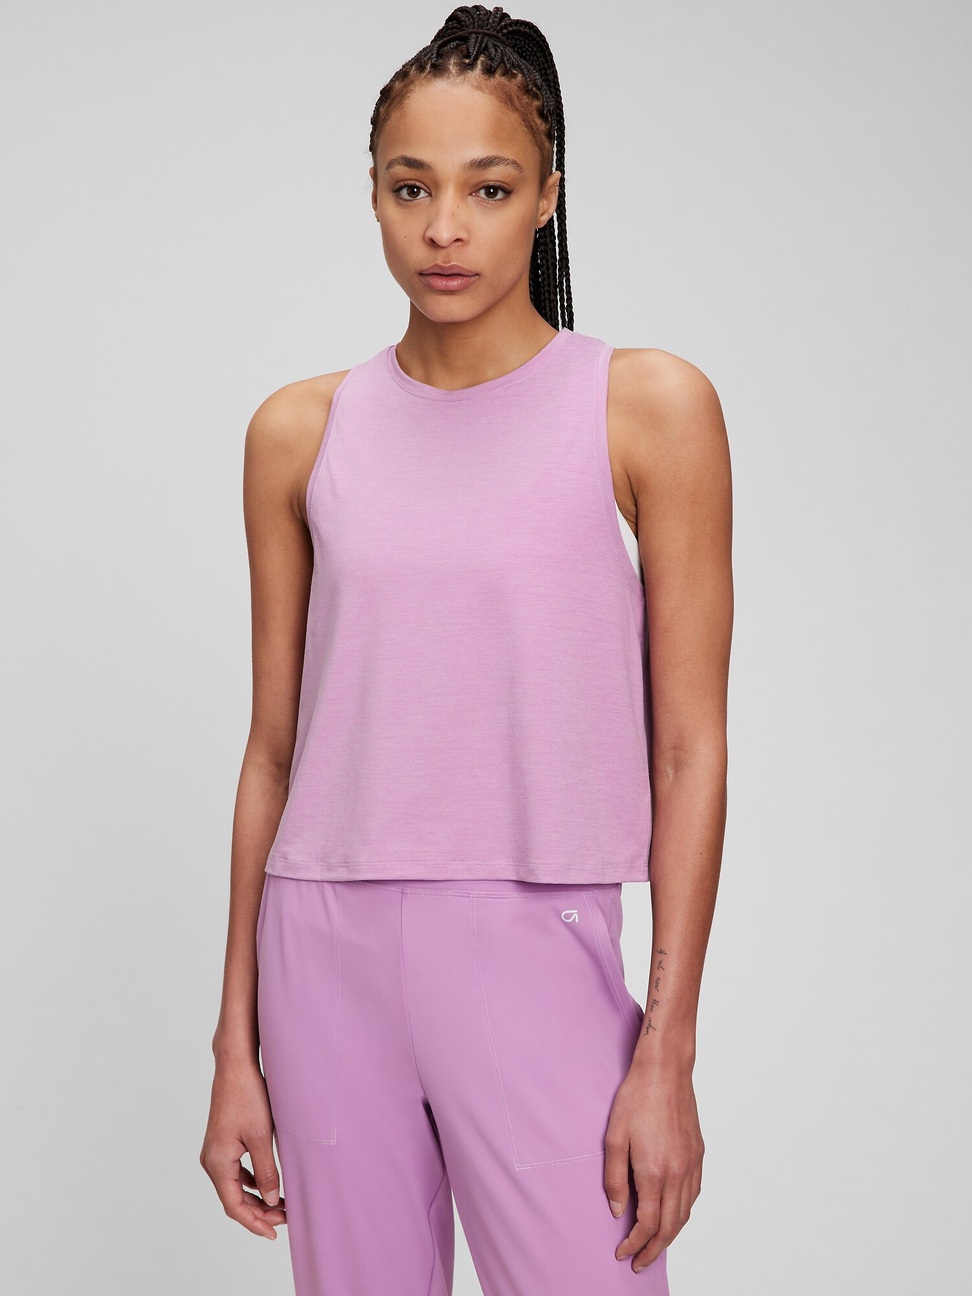 女裝|素色透氣無袖運動T恤 Gap Fit運動系列-紫色